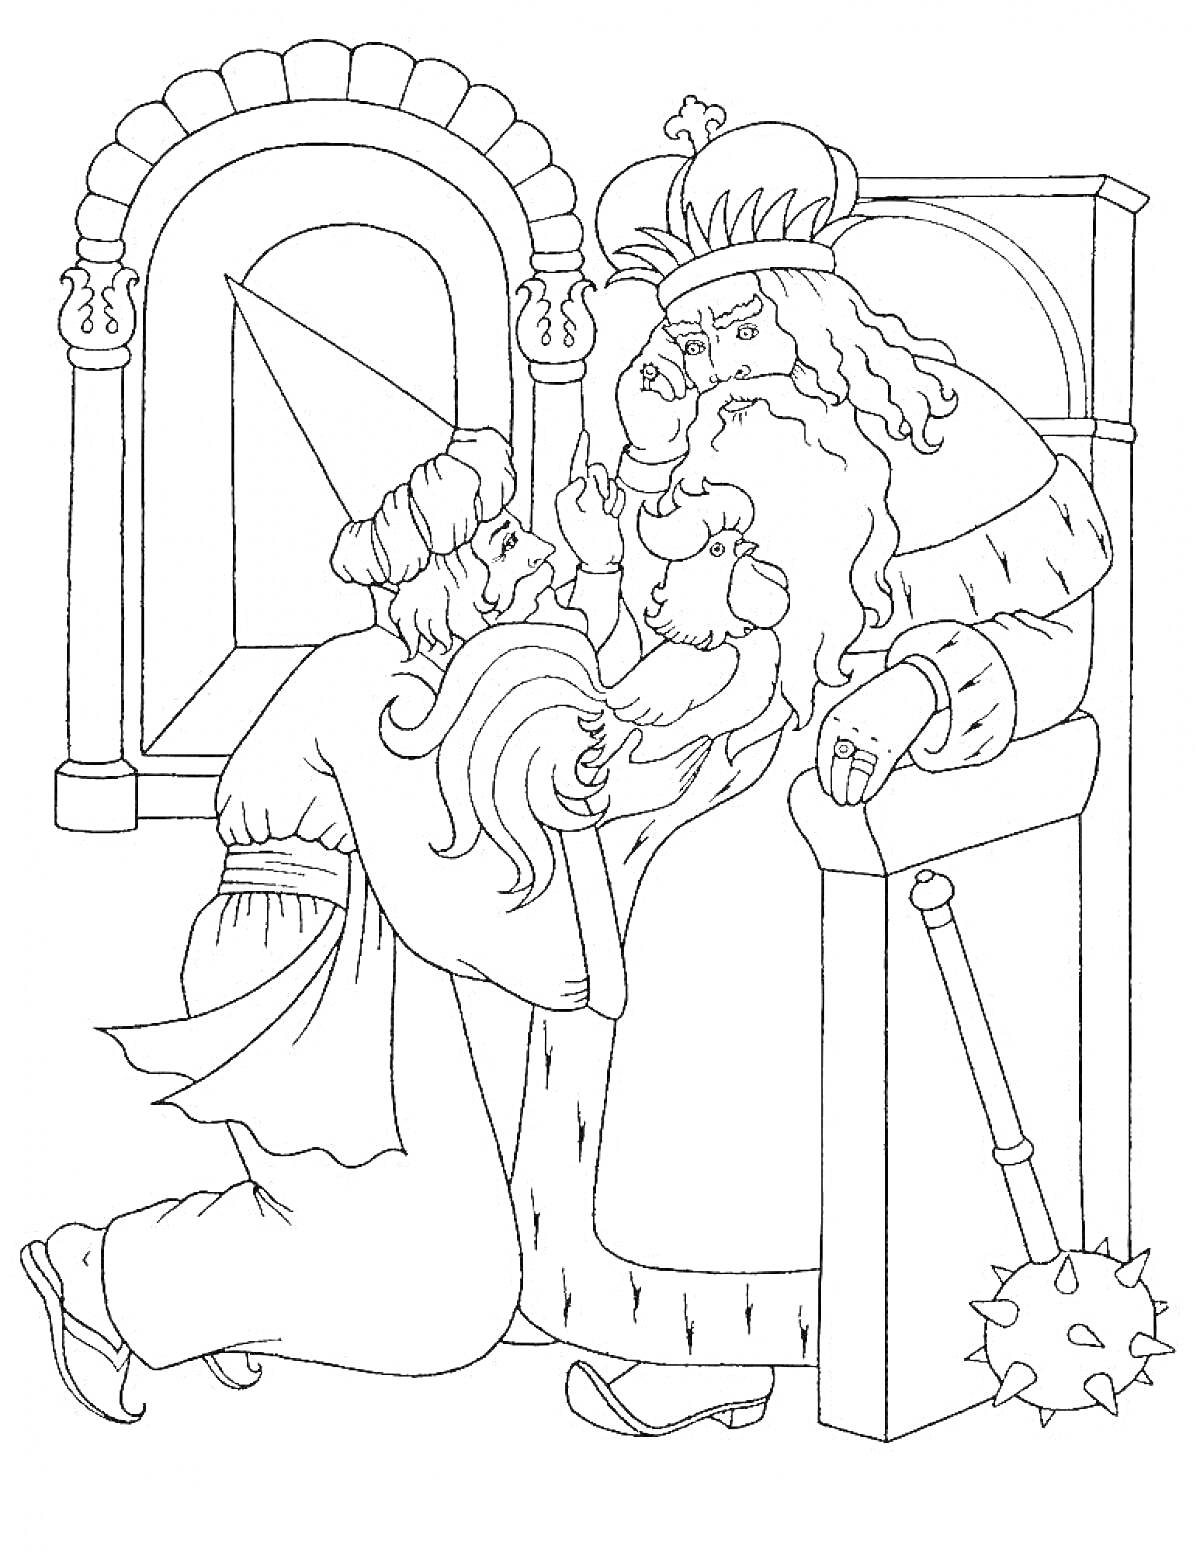 Раскраска Царь на троне с золотым петушком и волхв, стоящий на коленях